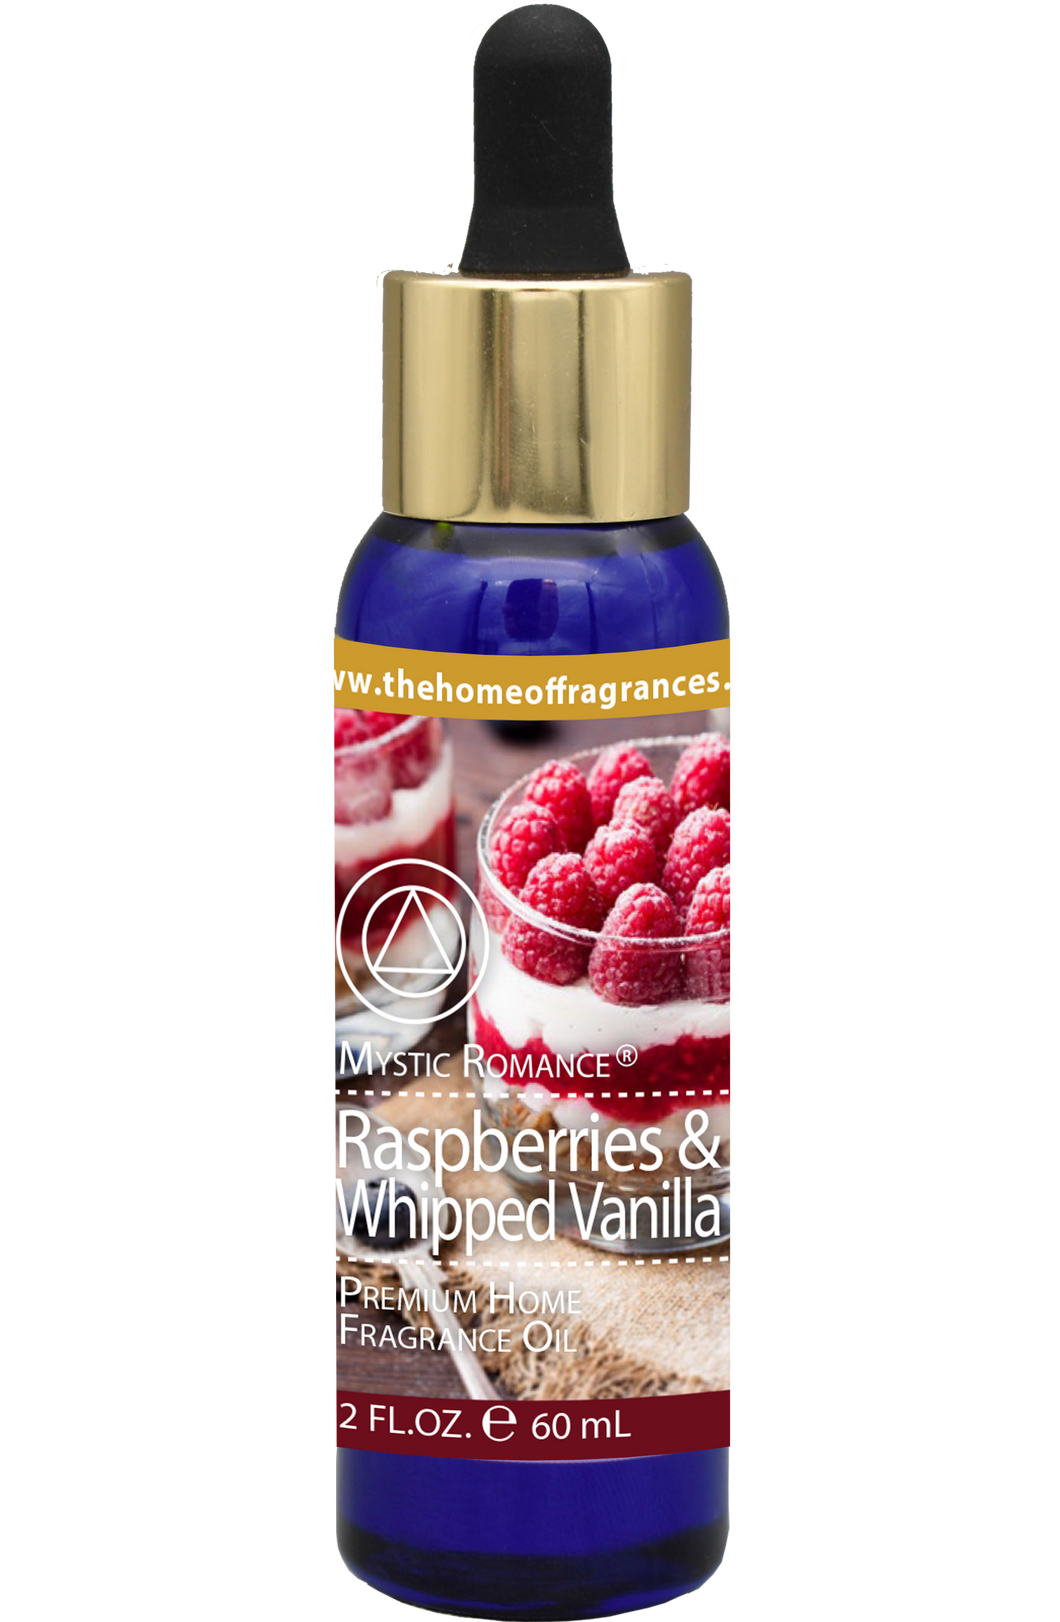 Raspberries & Whipped Vanilla